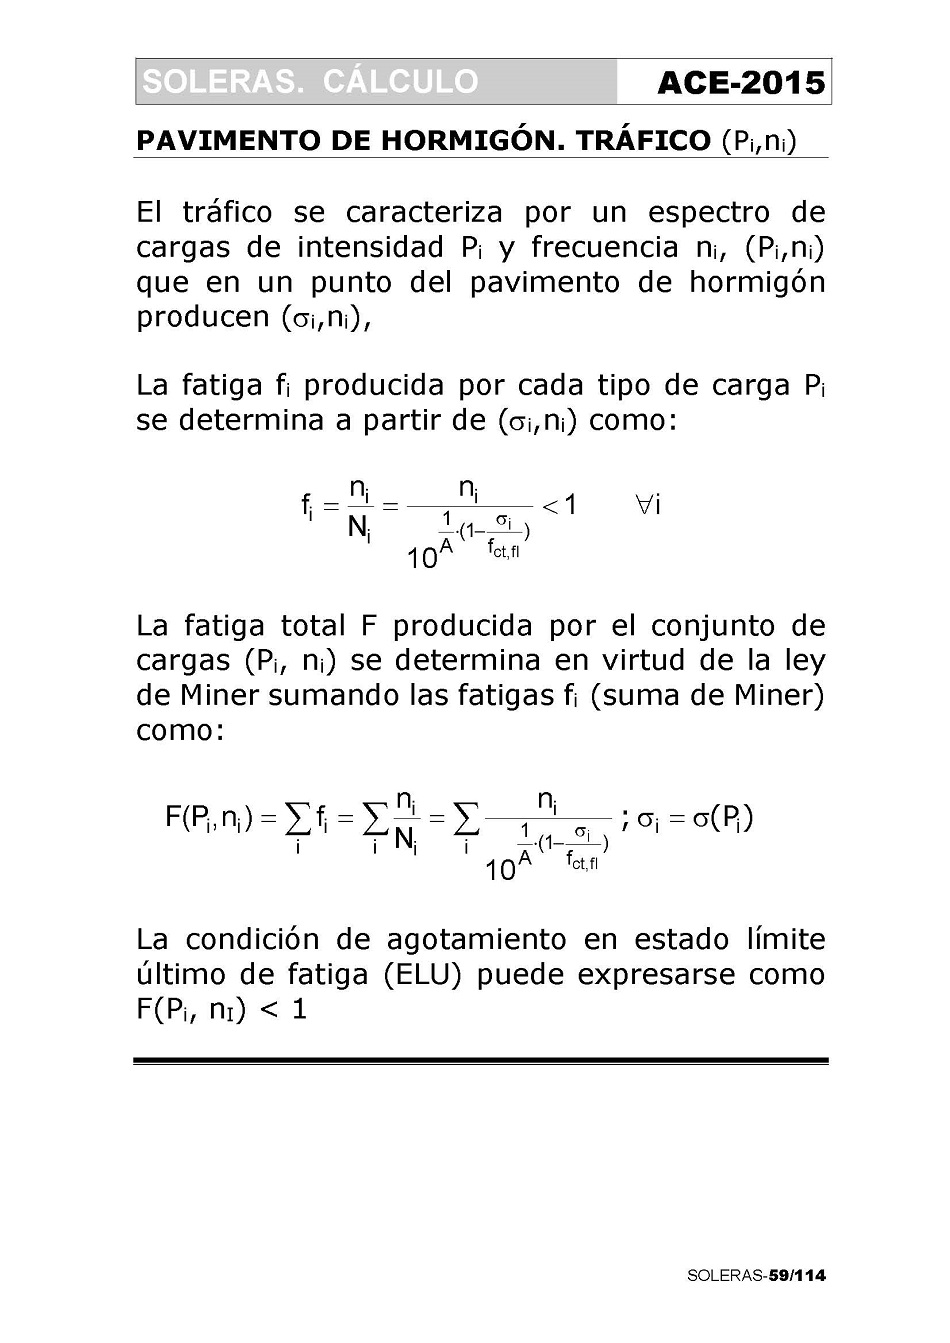 Cálculo de Soleras de Hormigón. Página 59